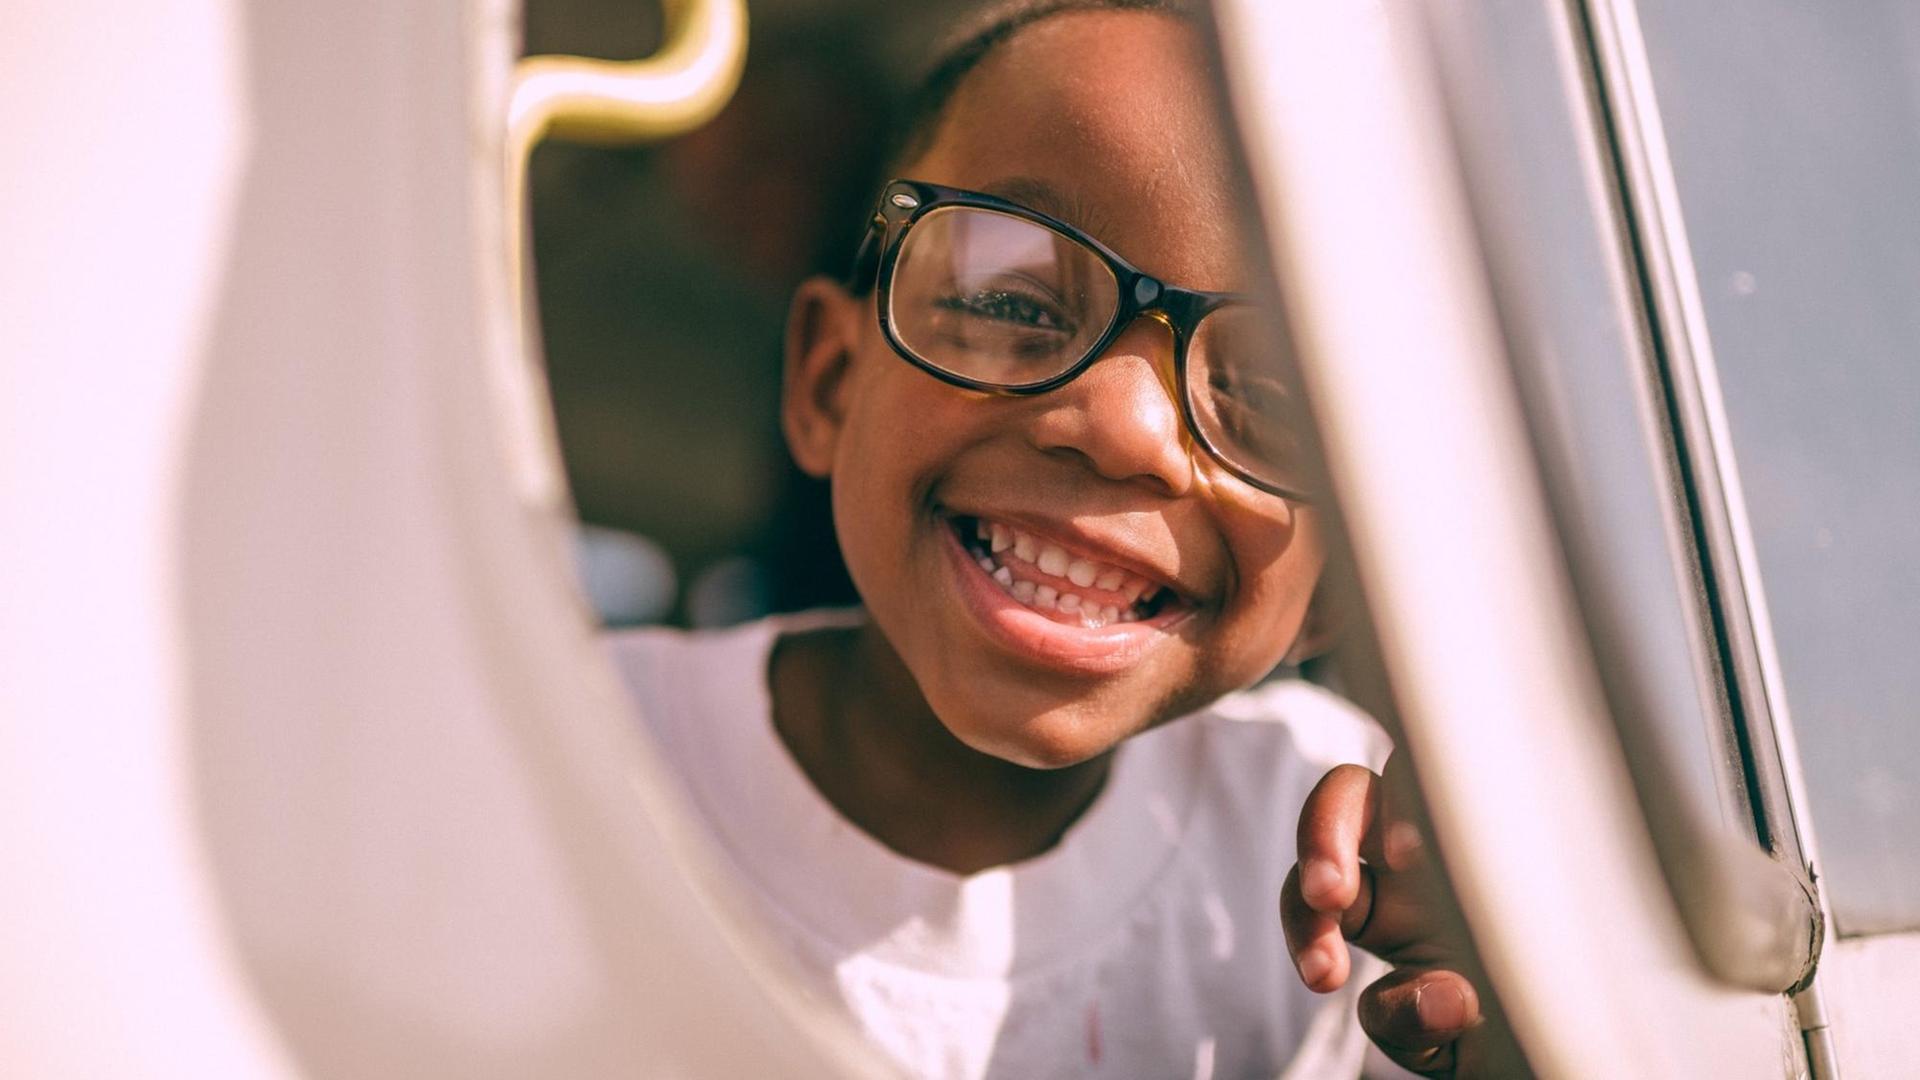 Ein grinsender Junge mit Brille schaut durch eine Art Luke oder Fenster